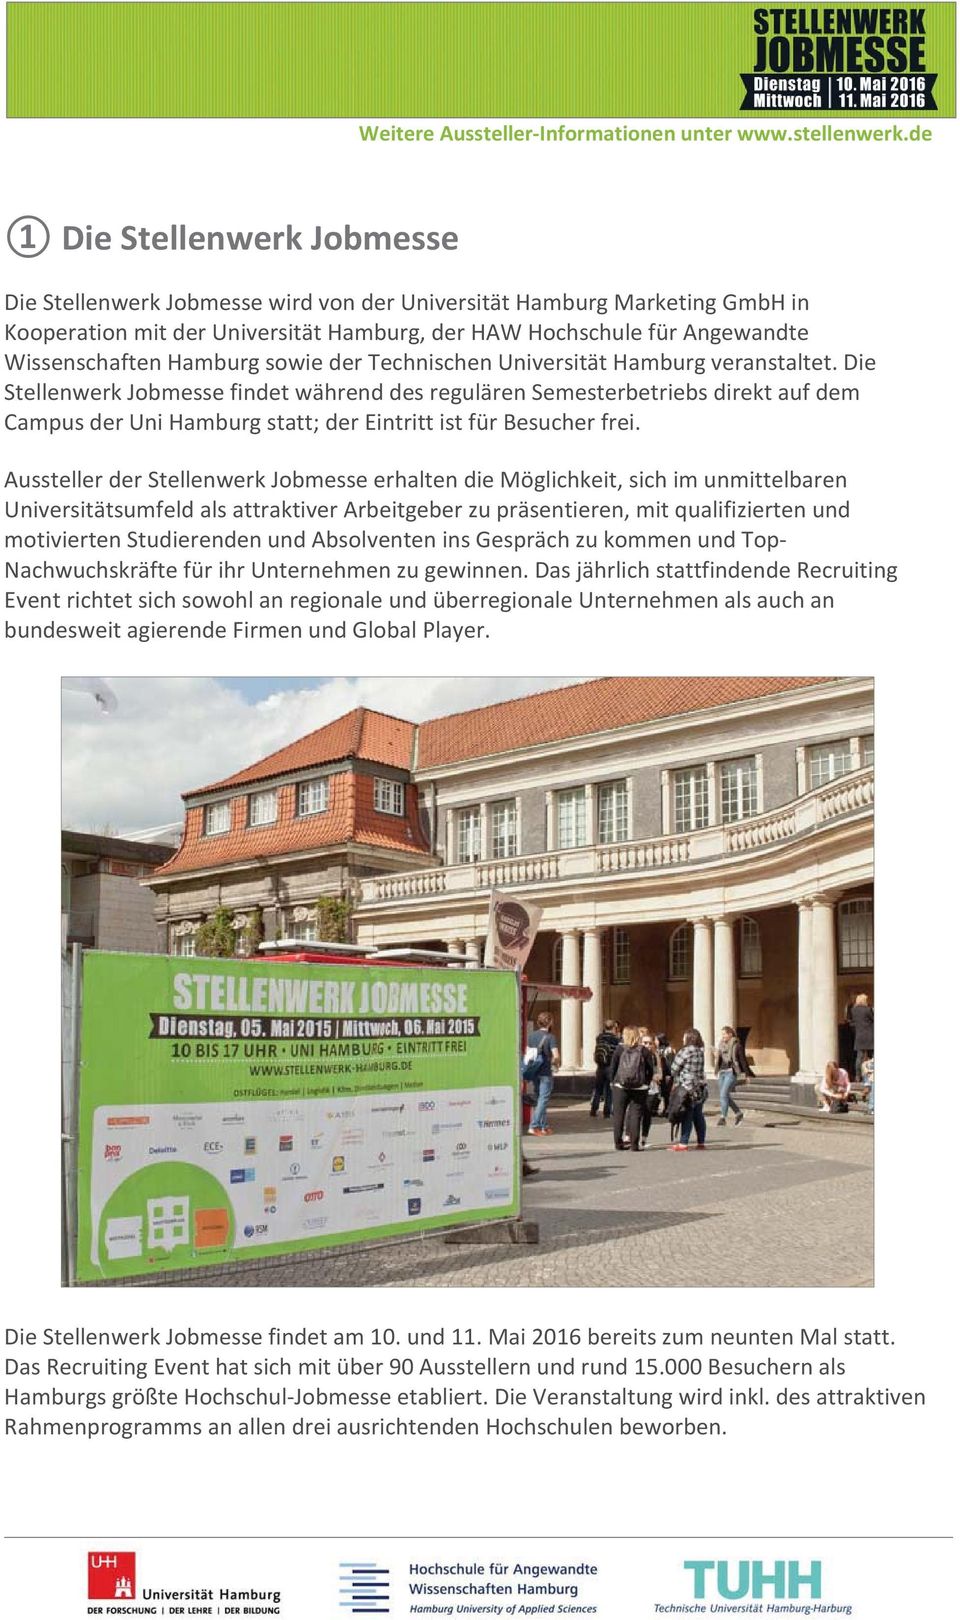 WissenschaftenHamburgsowiederTechnischenUniversitätHamburgveranstaltet.